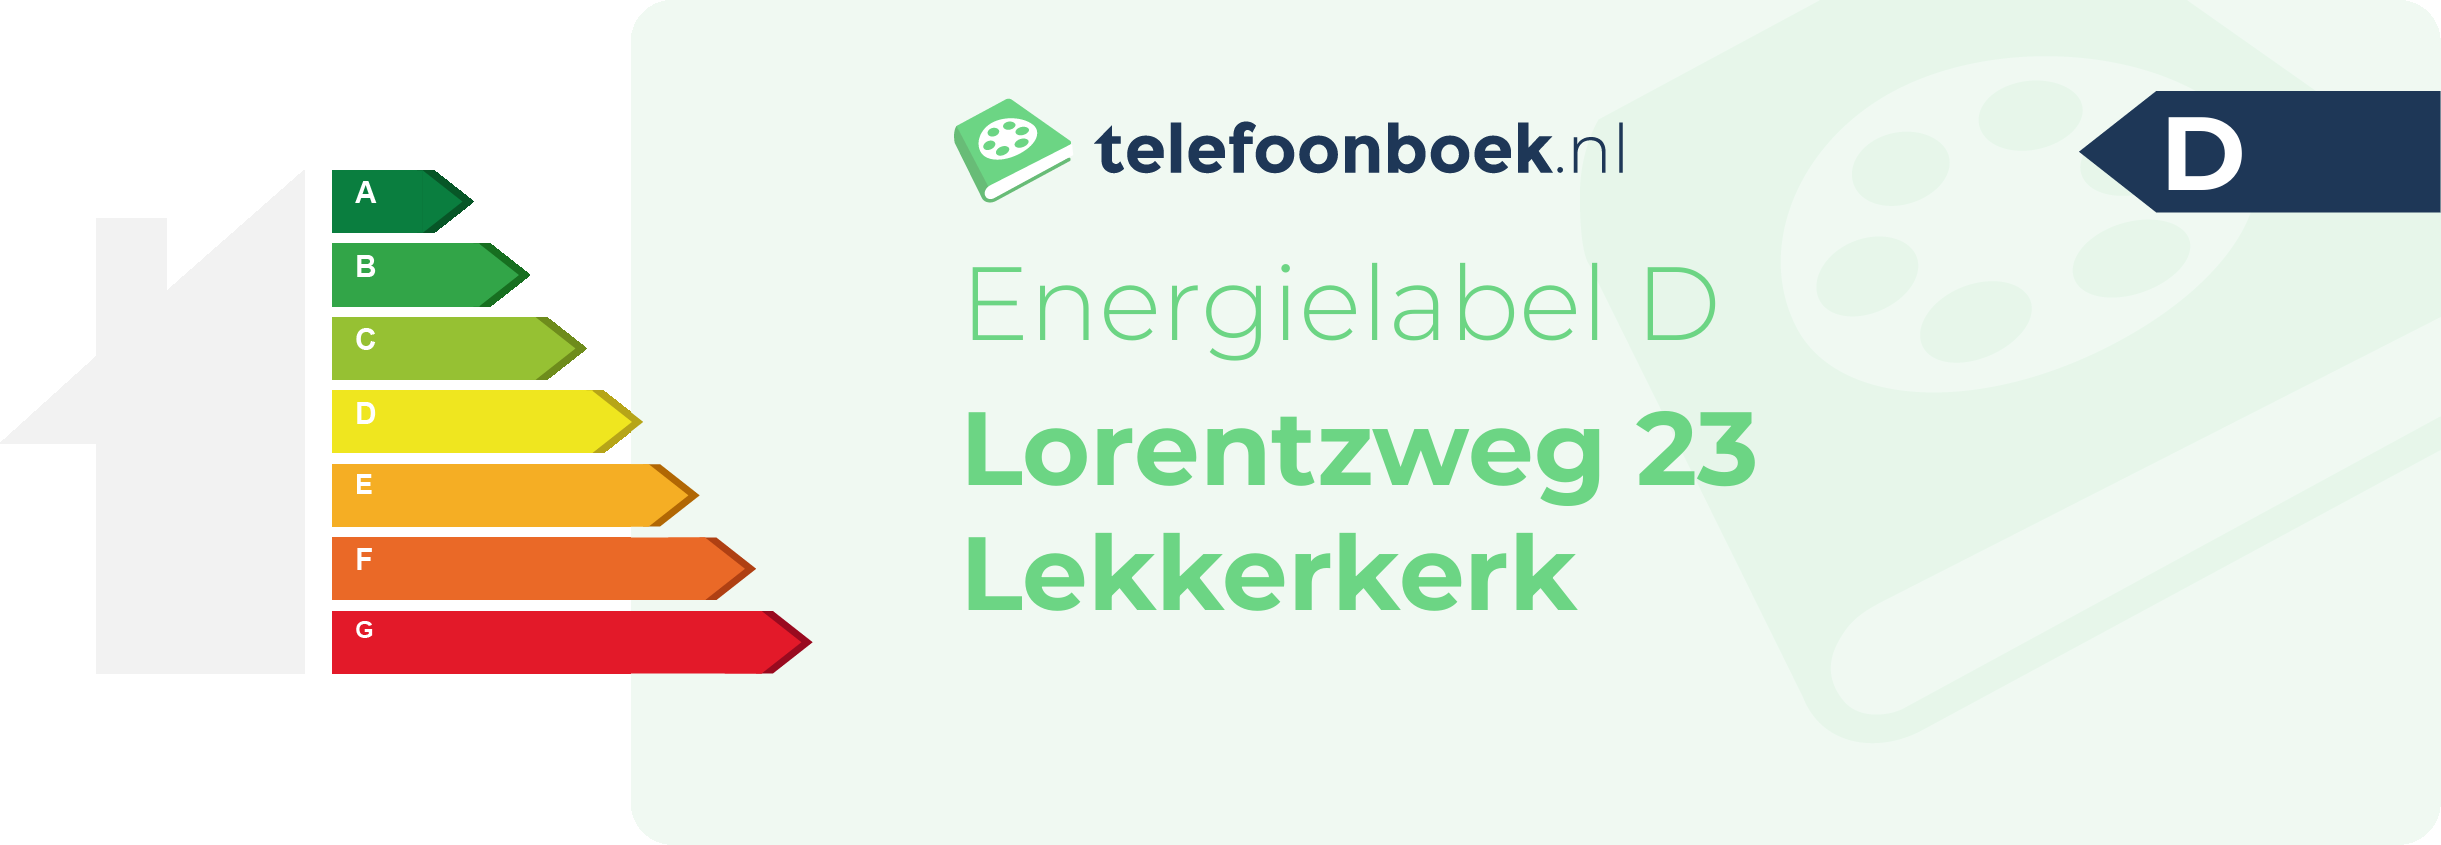 Energielabel Lorentzweg 23 Lekkerkerk